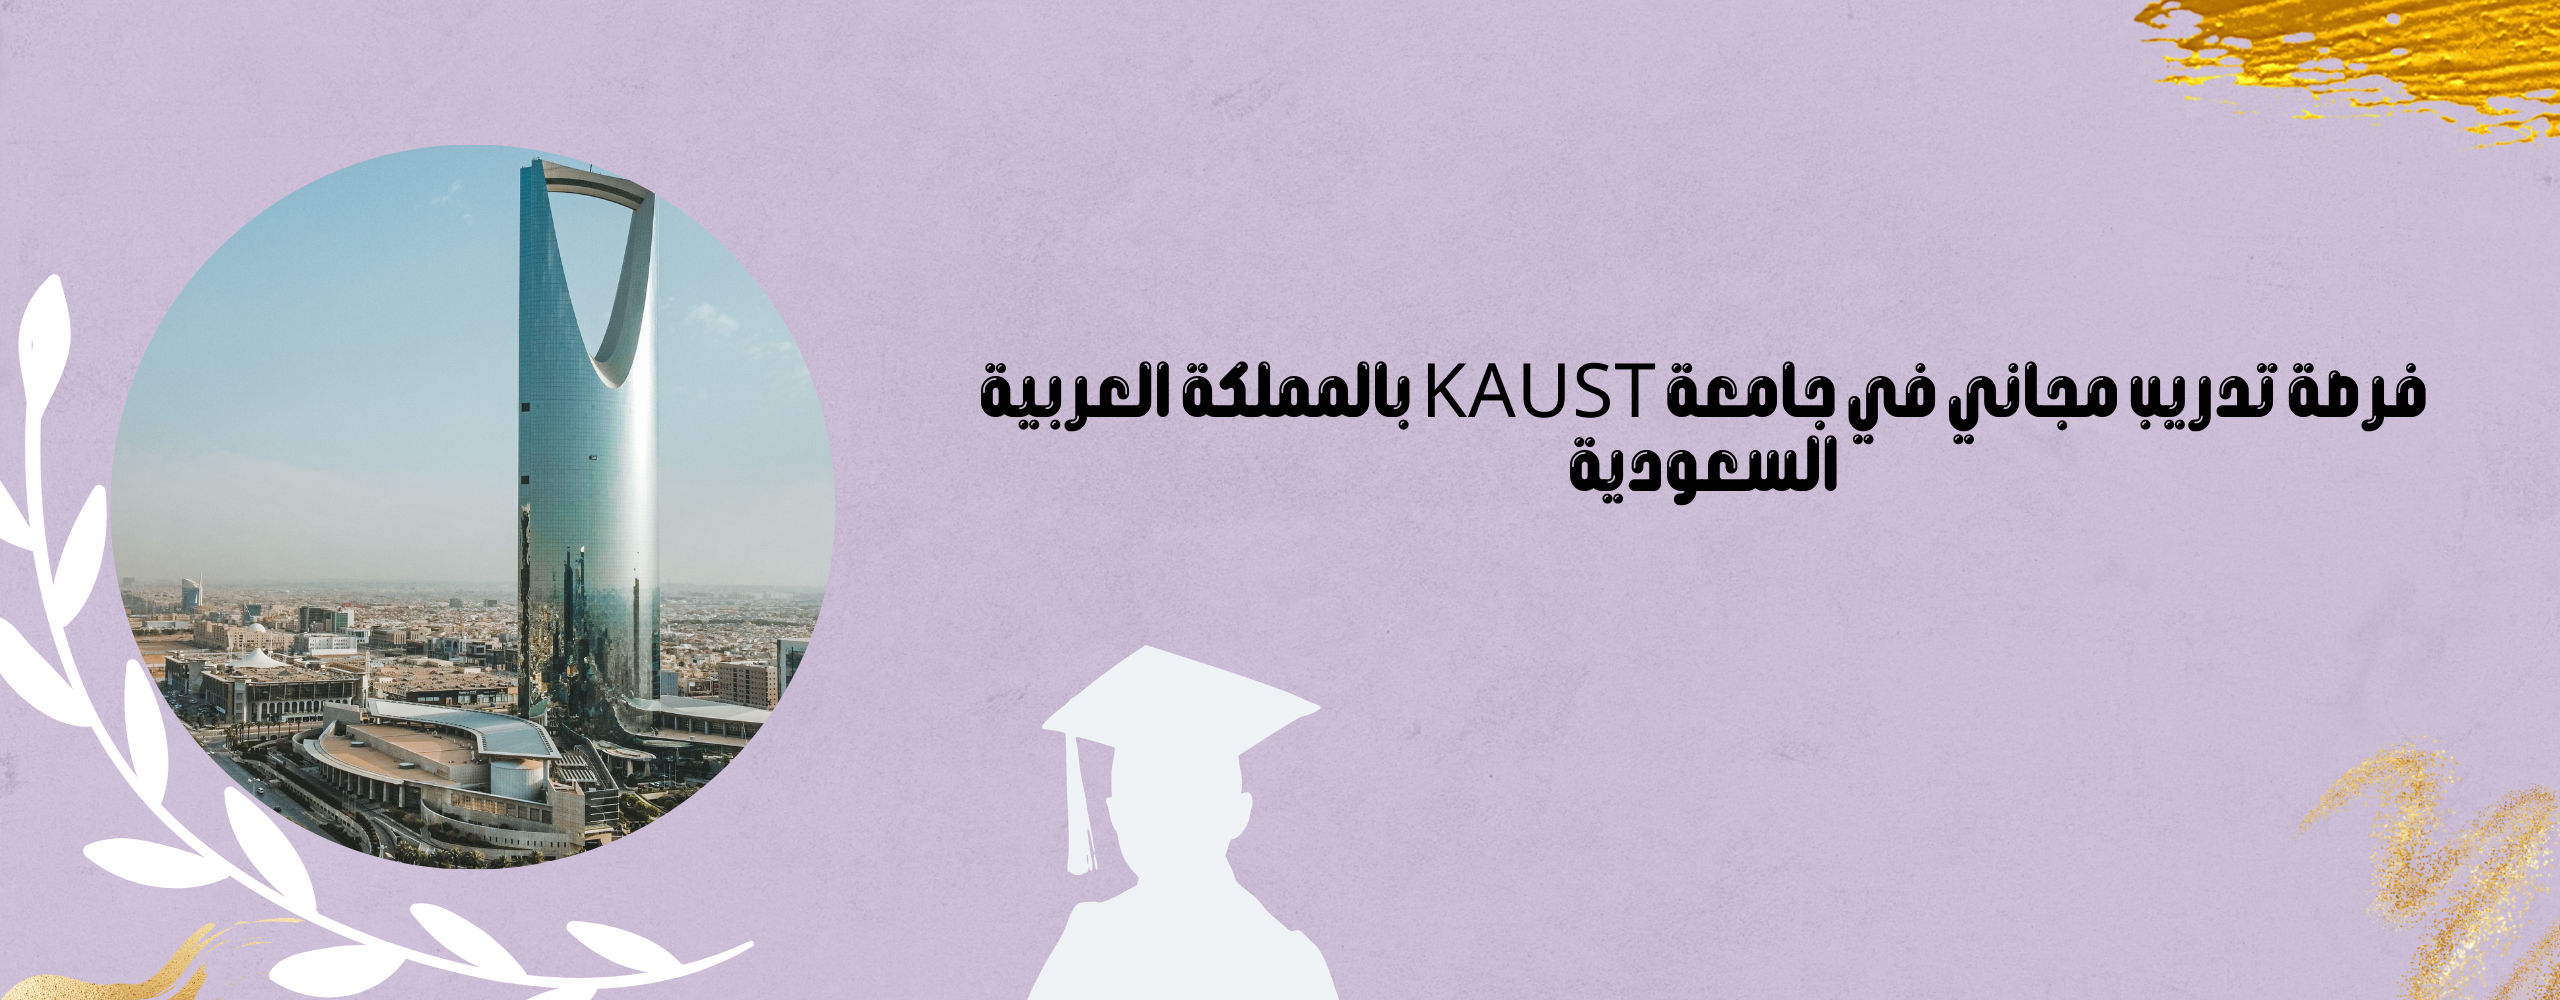 فرصة تدريب في جامعة KAUST بالمملكة العربية السعودية